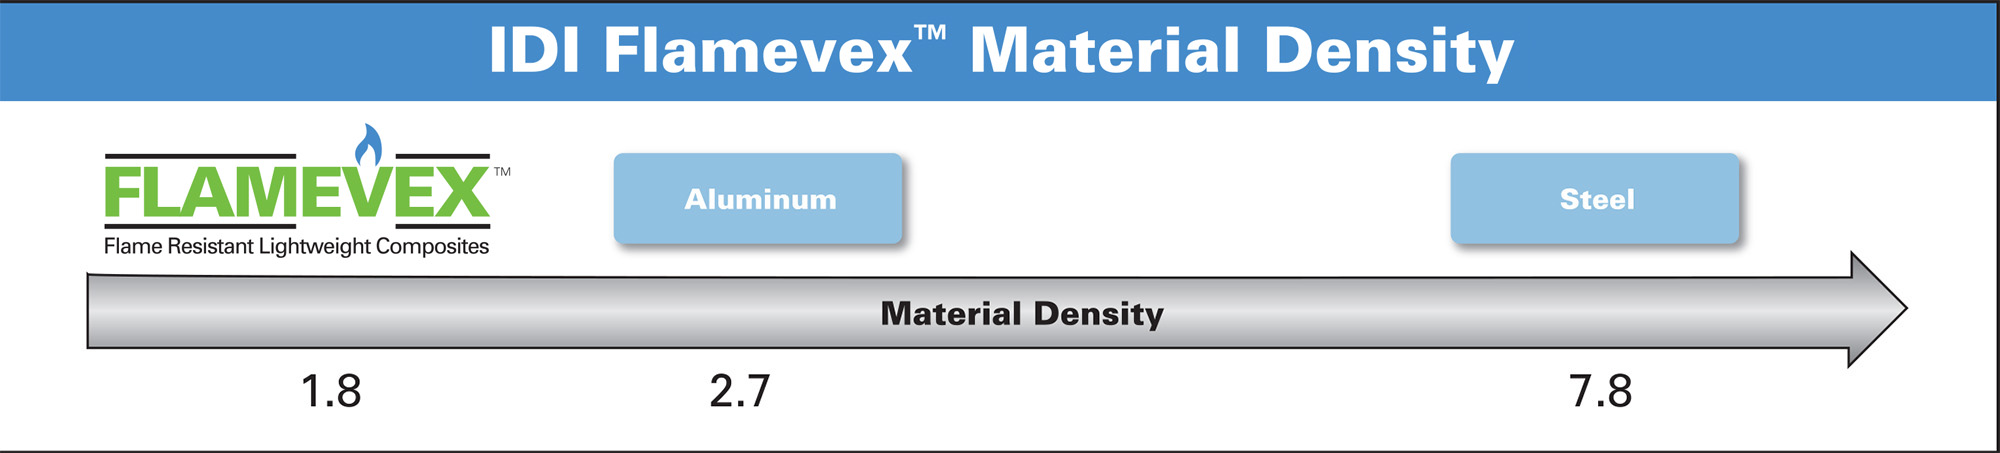 Flamevex Material Density Chart